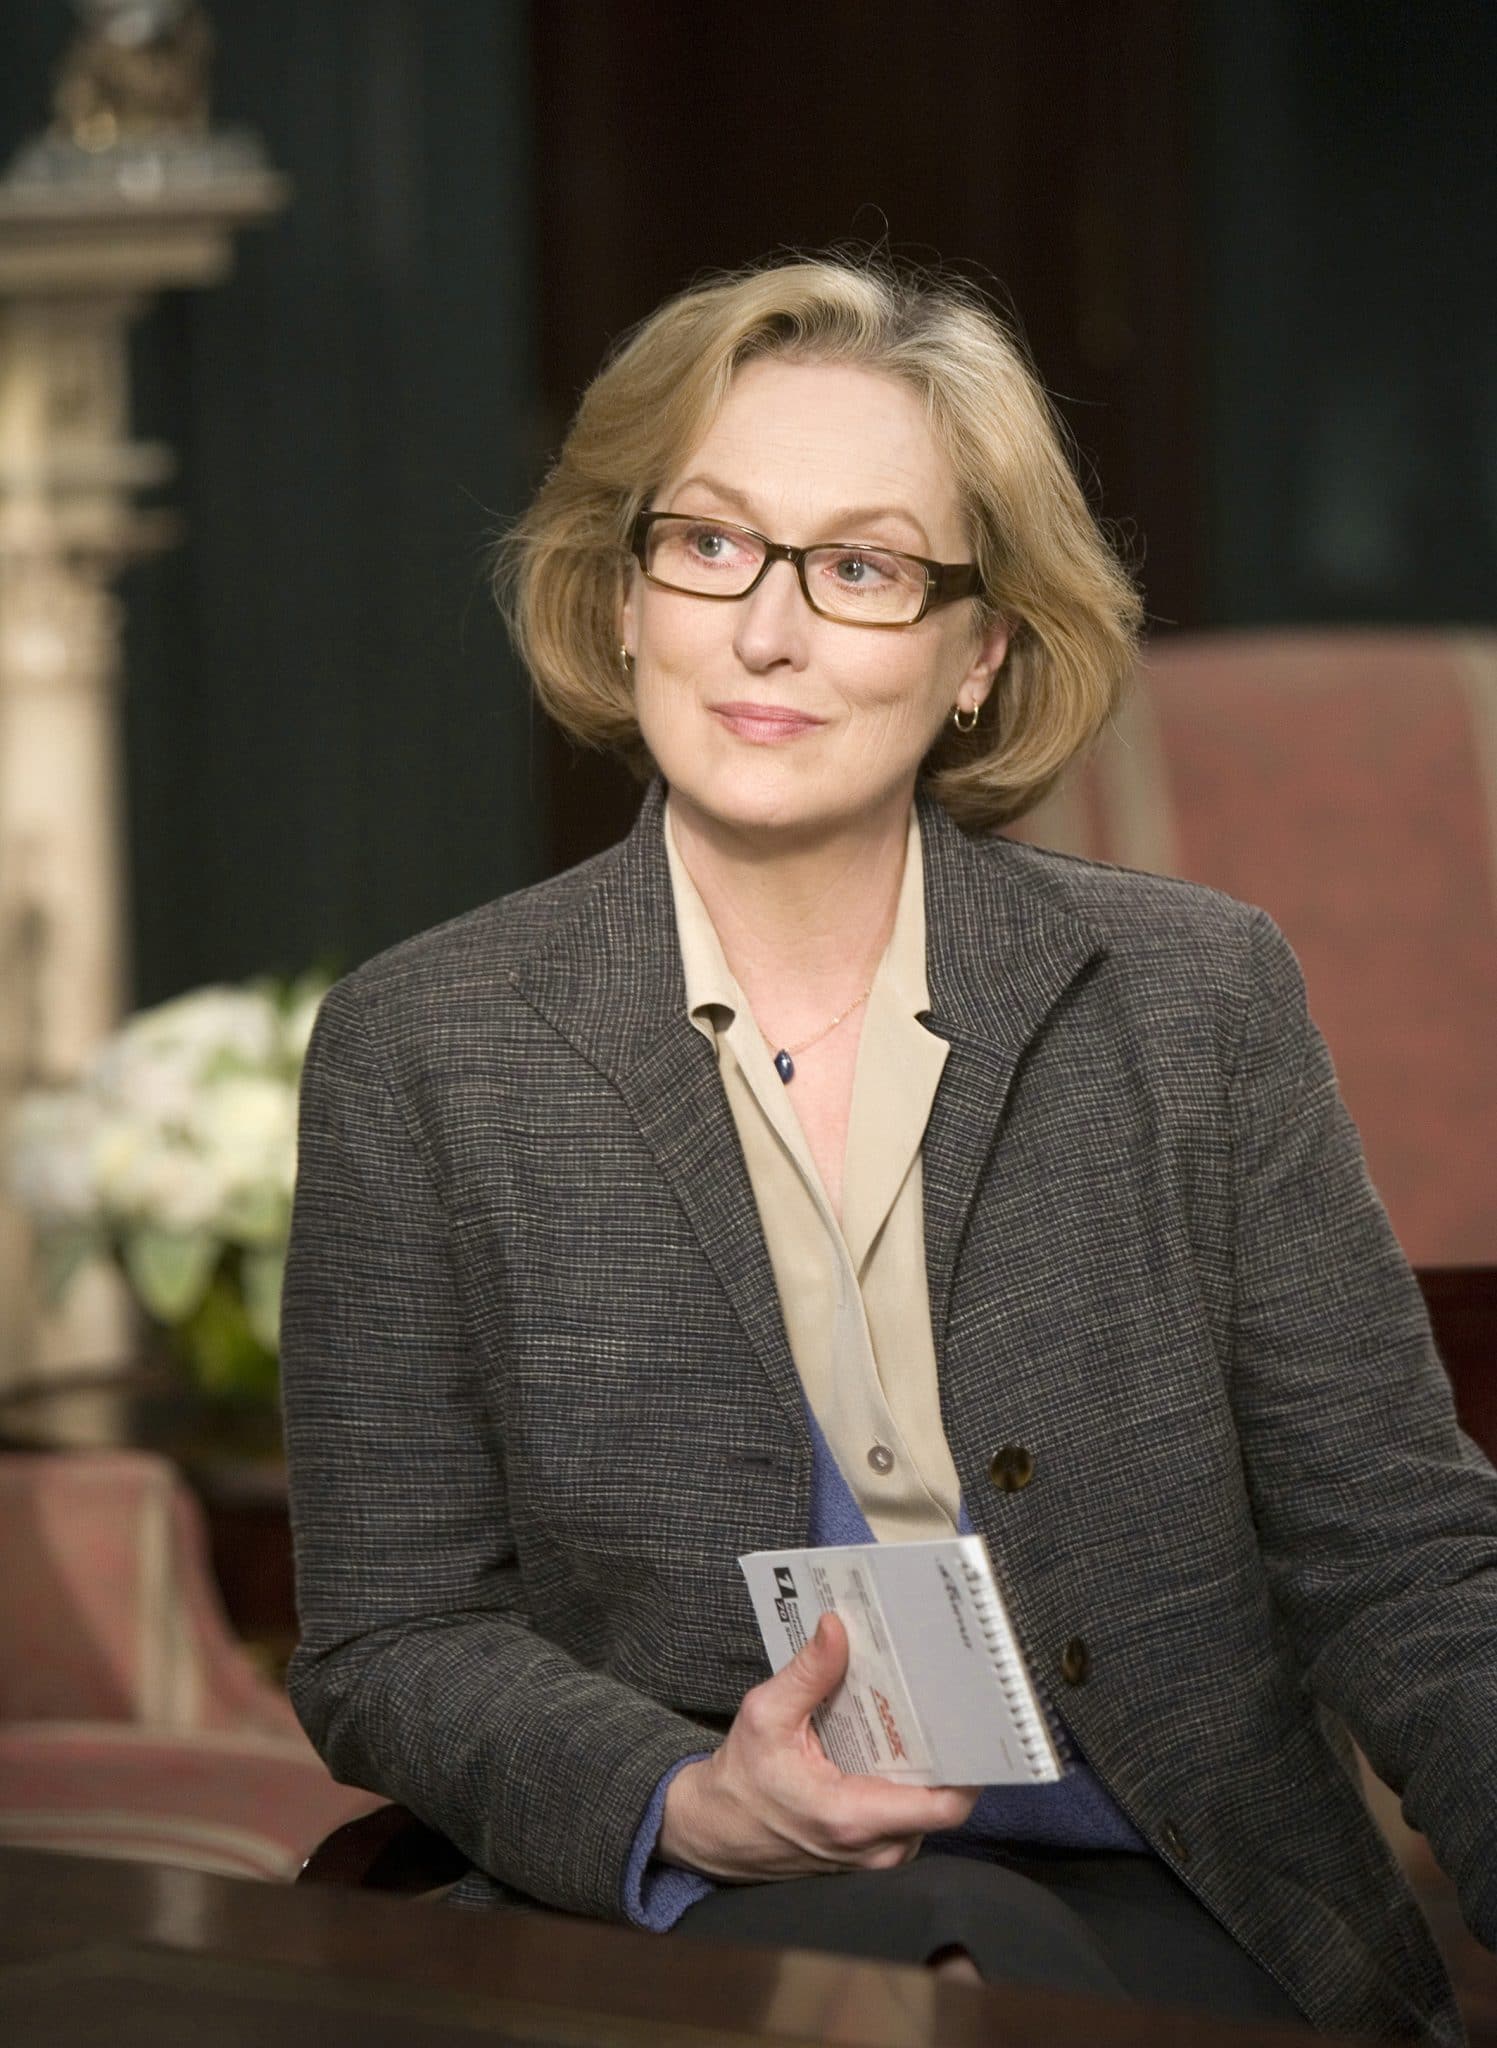 Meryl Streep in einem Businessoutfit mit Brille und einem Schreibheft in der Hand.